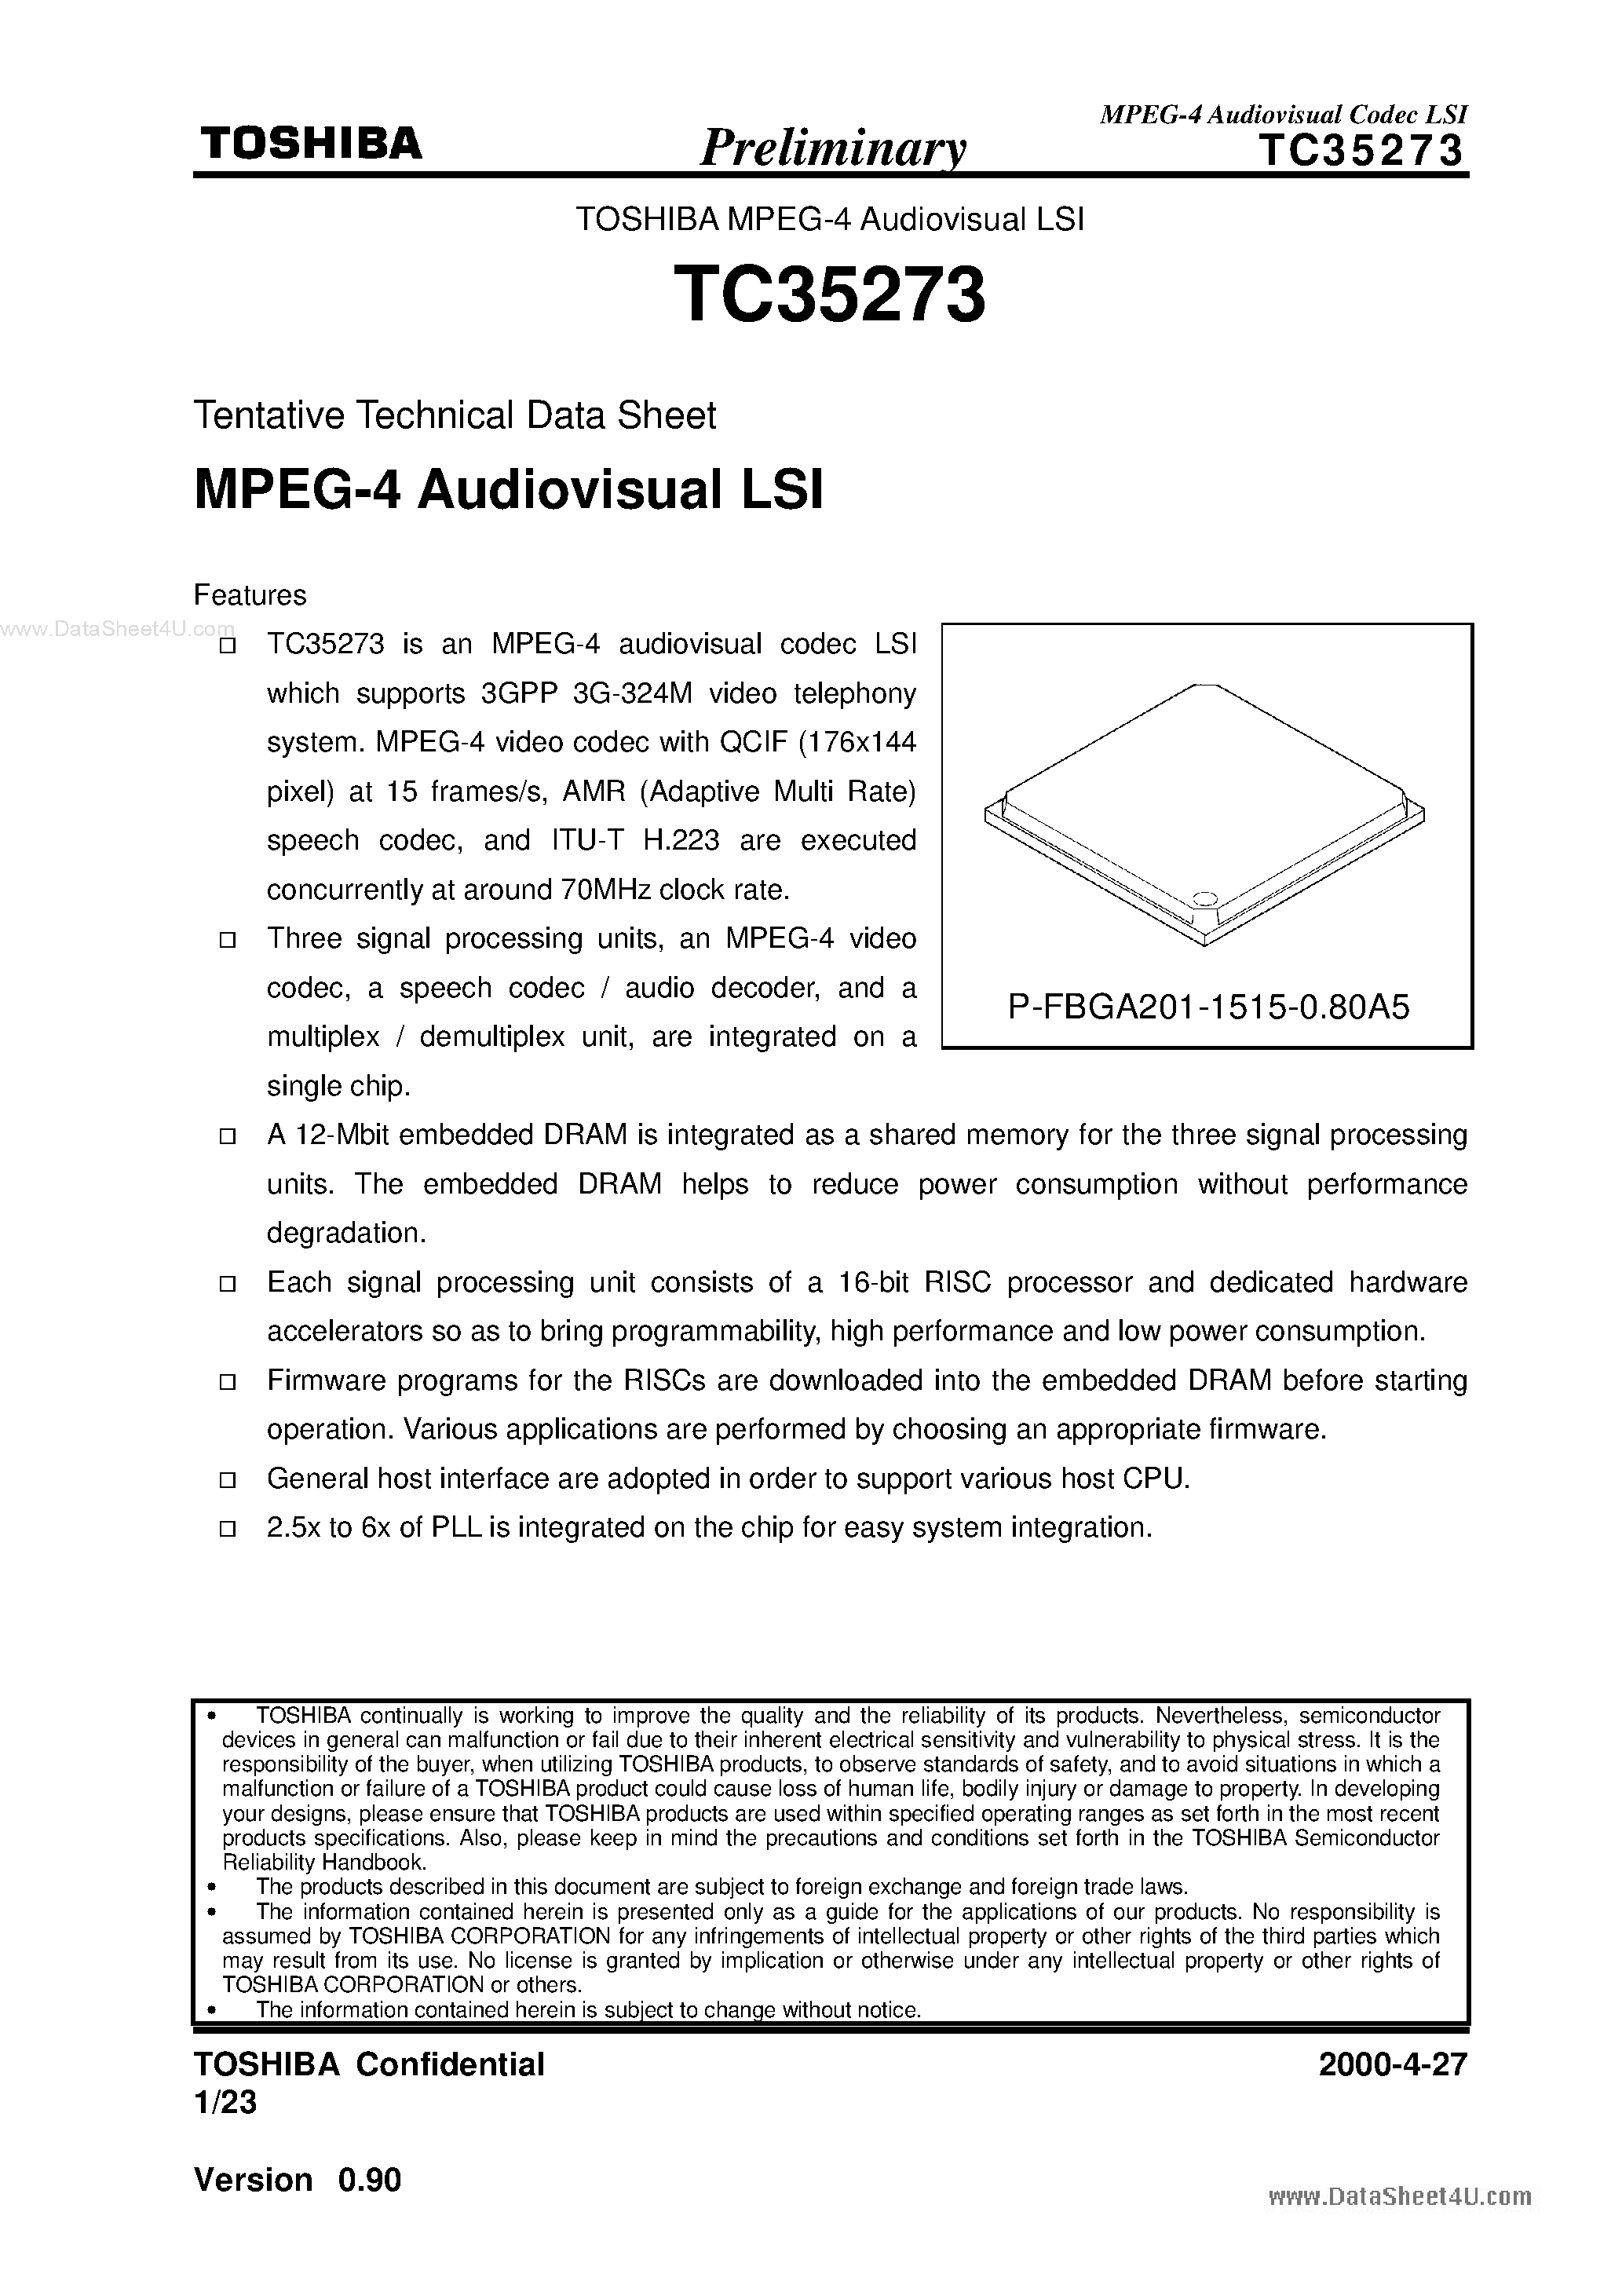 Даташит TC35273 - MPEG-4 Audiovisual LSI страница 1